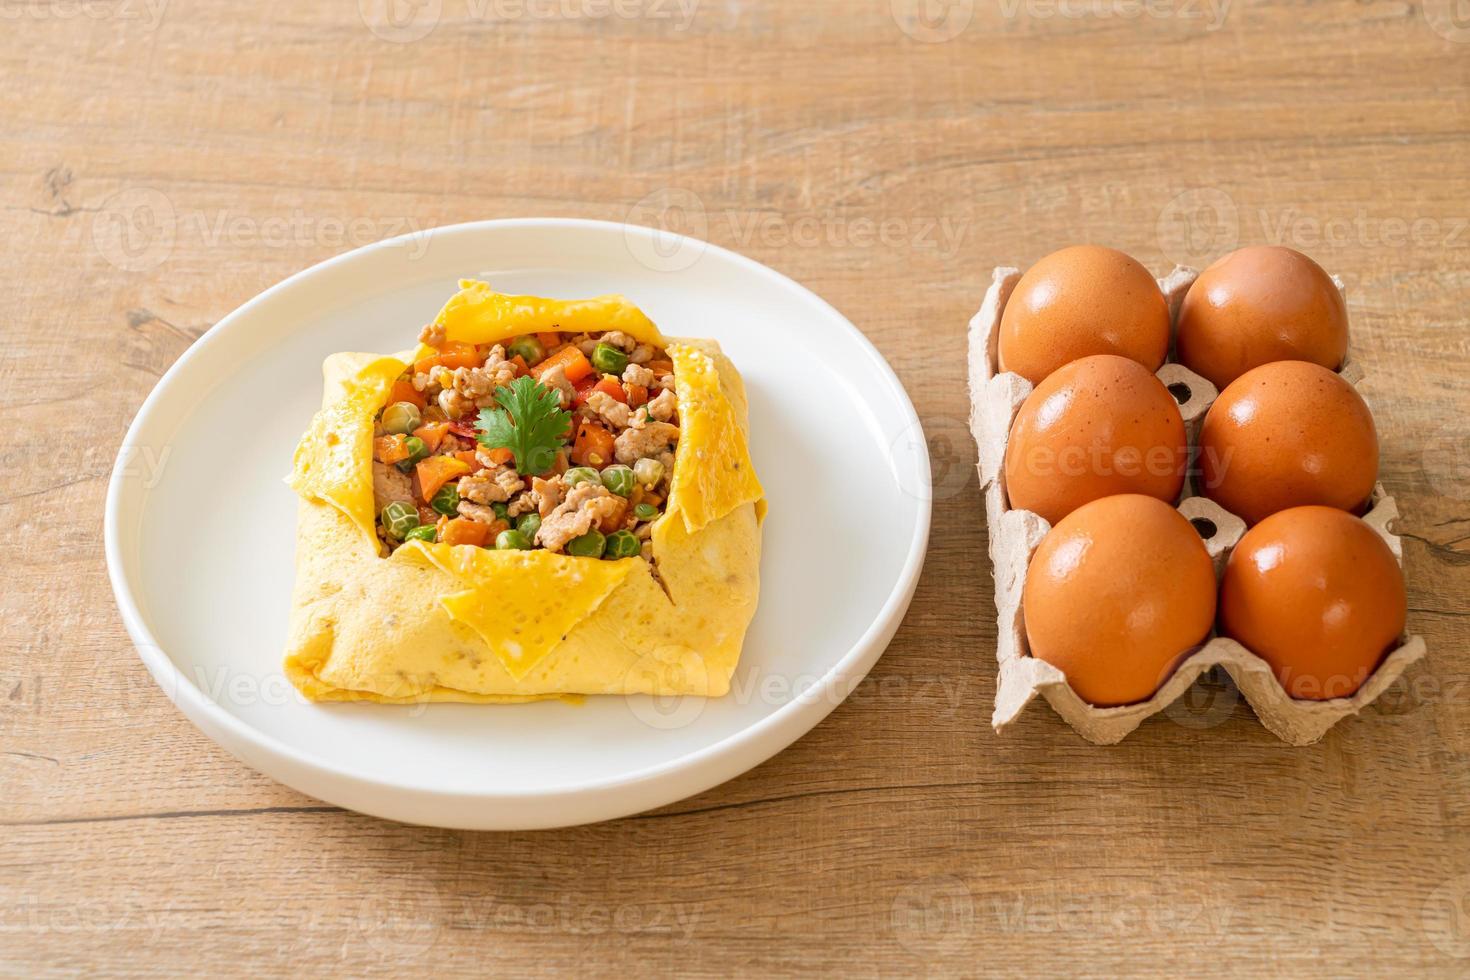 envoltura de huevo o huevo relleno con carne de cerdo picada, zanahoria, tomate y guisantes foto